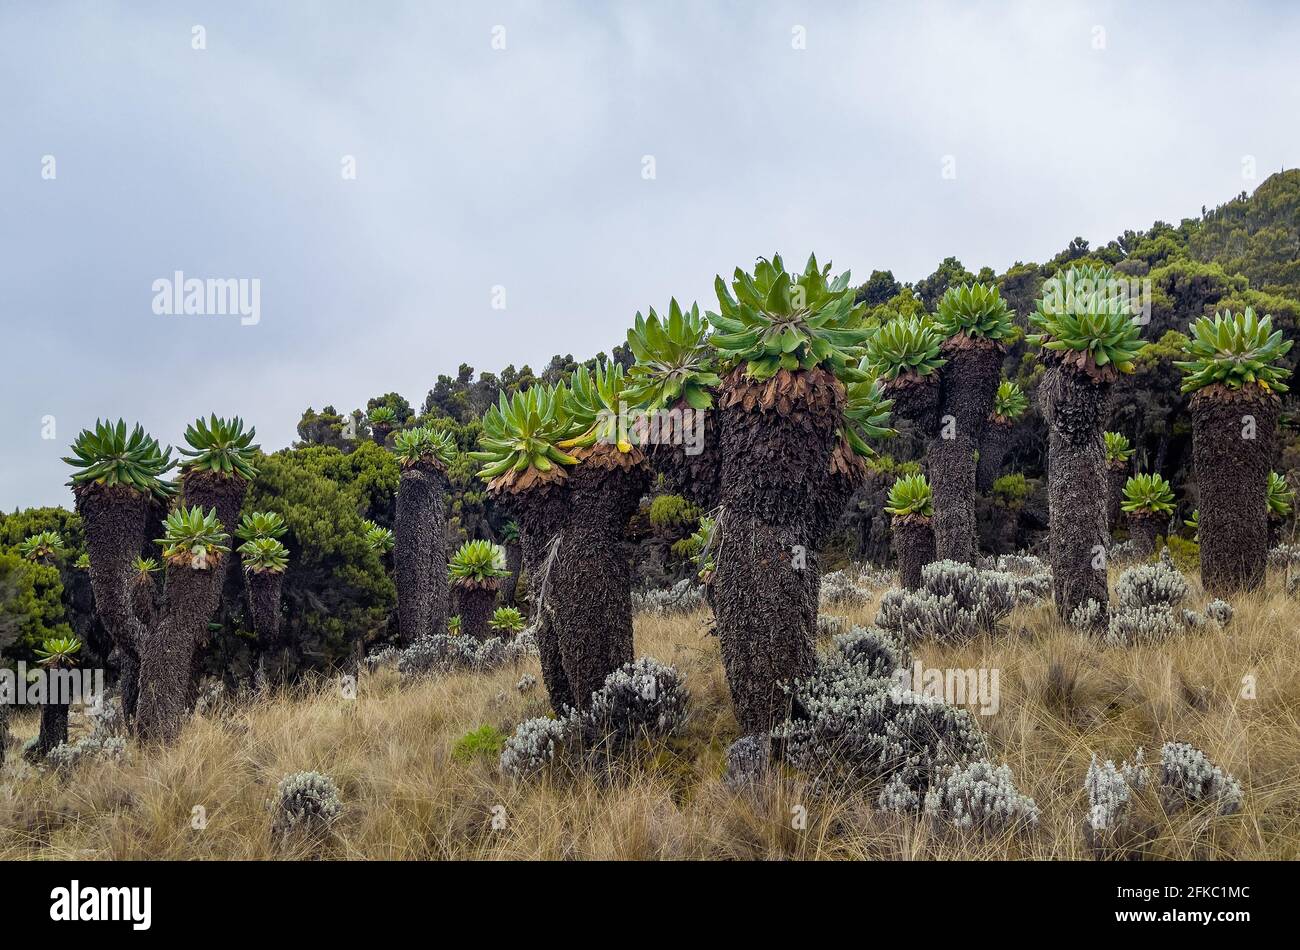 Dendrosenecio kilimanjari - Moorzonen in großer Höhe einzigartige Pflanze. Es ist ein riesiger Grundstein, der auf dem Kilimandscharo in Afrika, Tansania, gefunden wurde Stockfoto